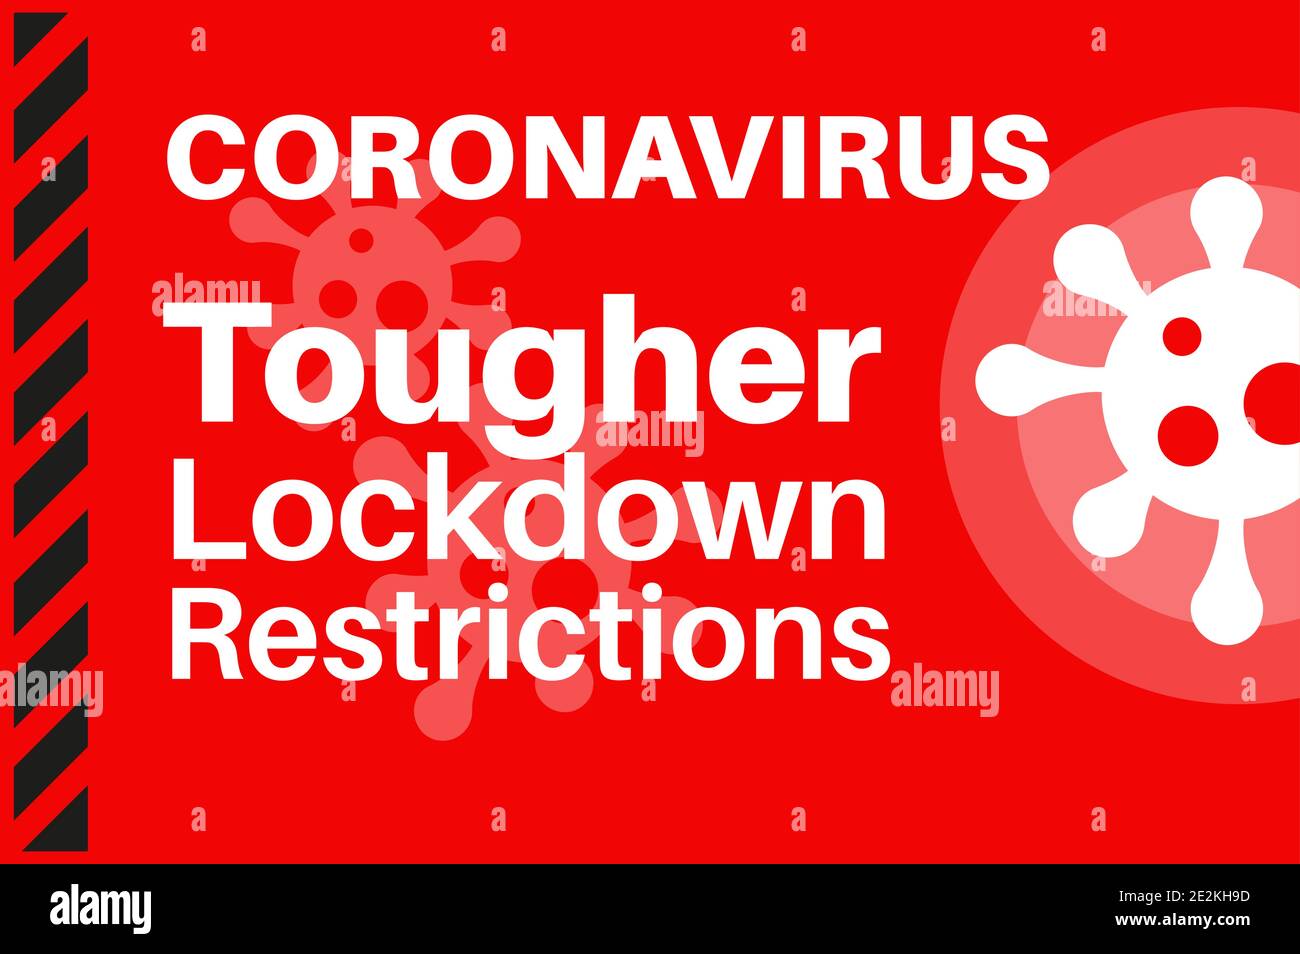 Coronavirus più duro nuovo Lockdown restrizioni per fermare la diffusione di COVID19 - Illustrazione con il logo del virus su uno sfondo rosso. Illustrazione Vettoriale